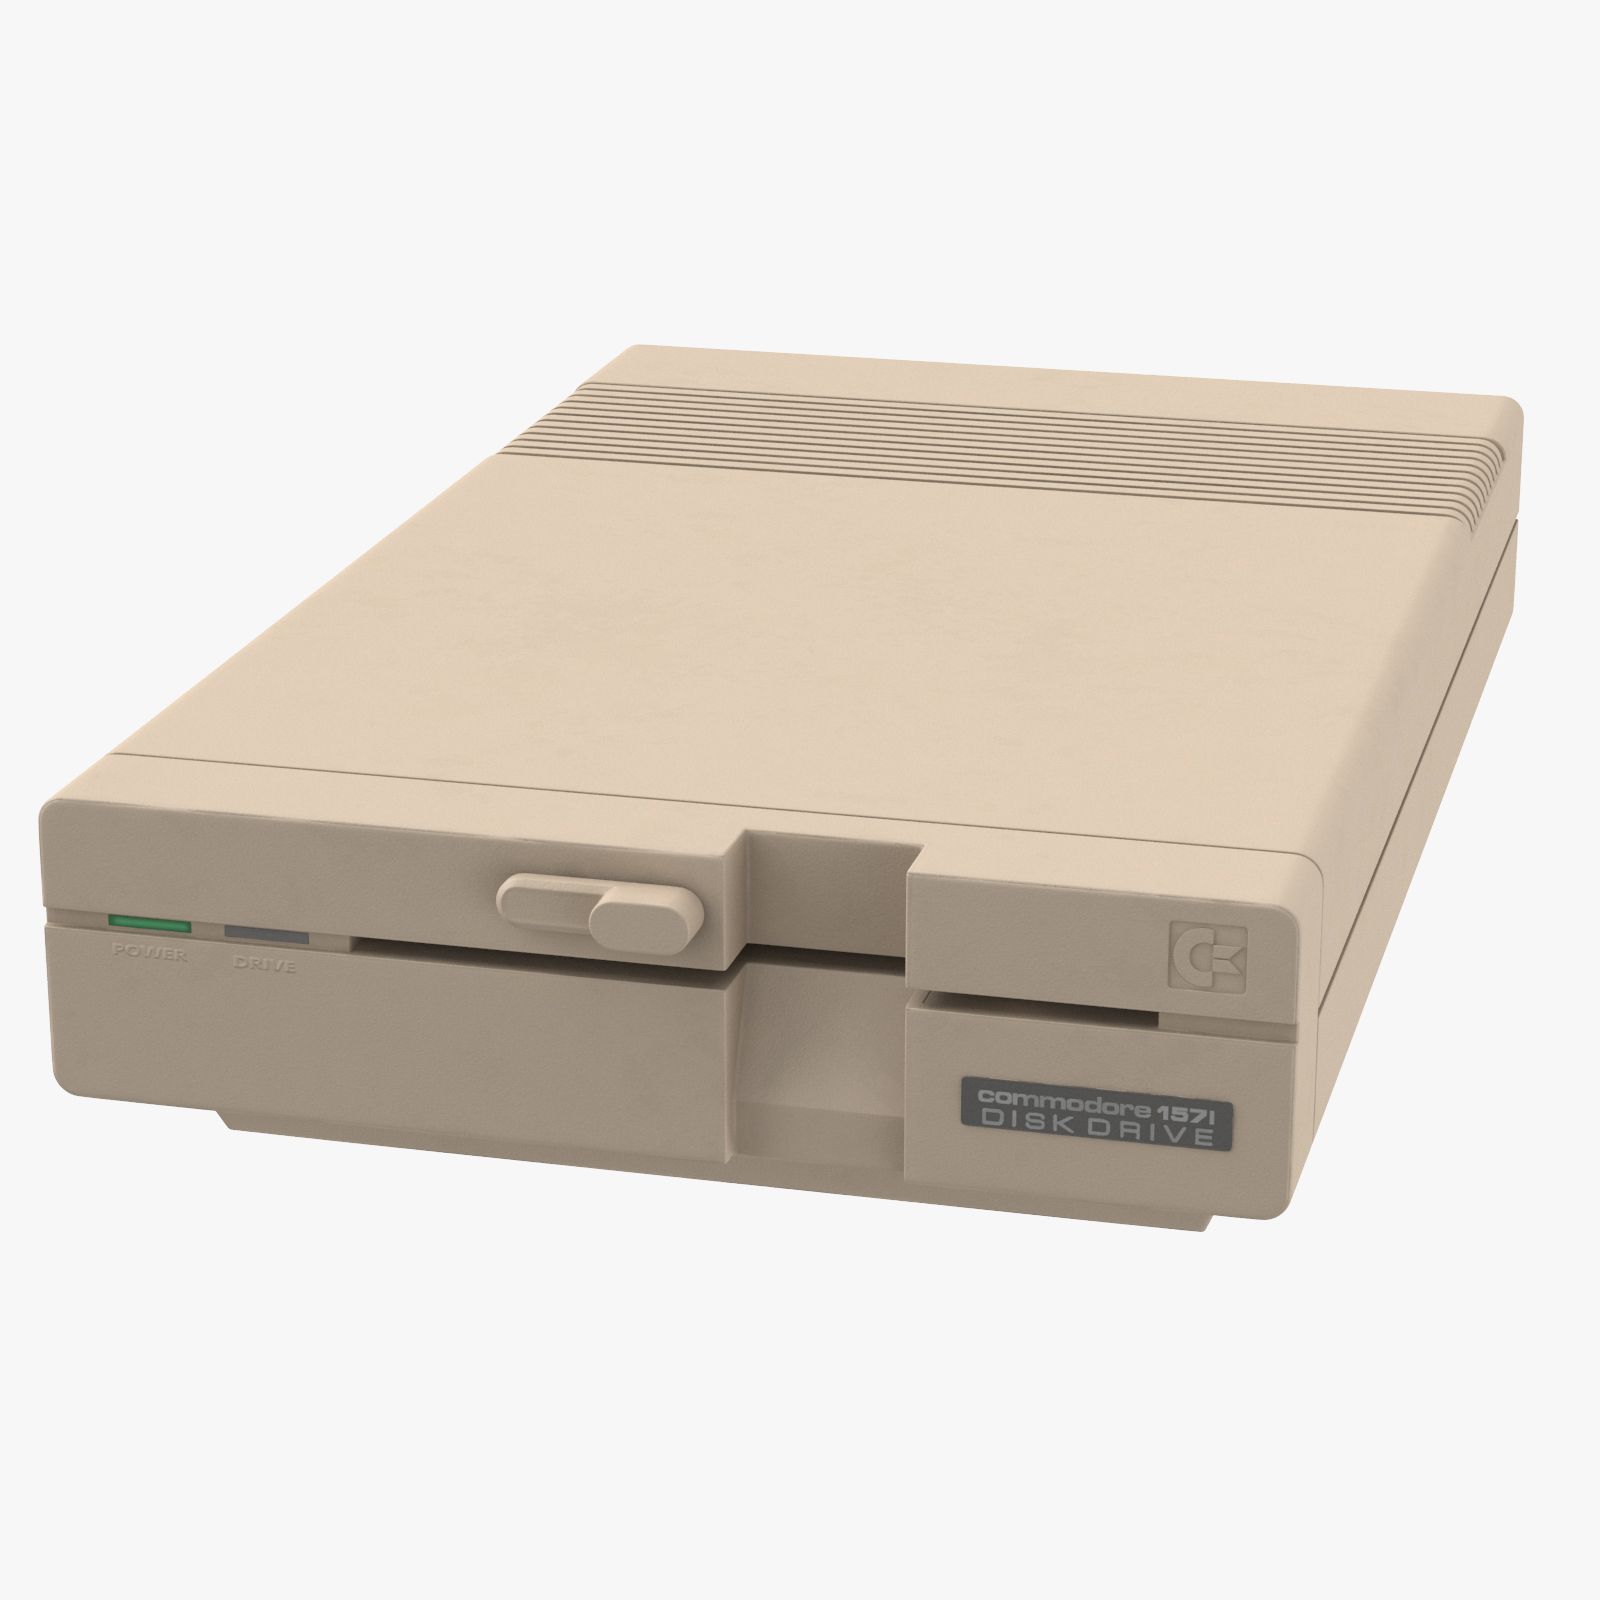 Commodore C1571: Imagen drive